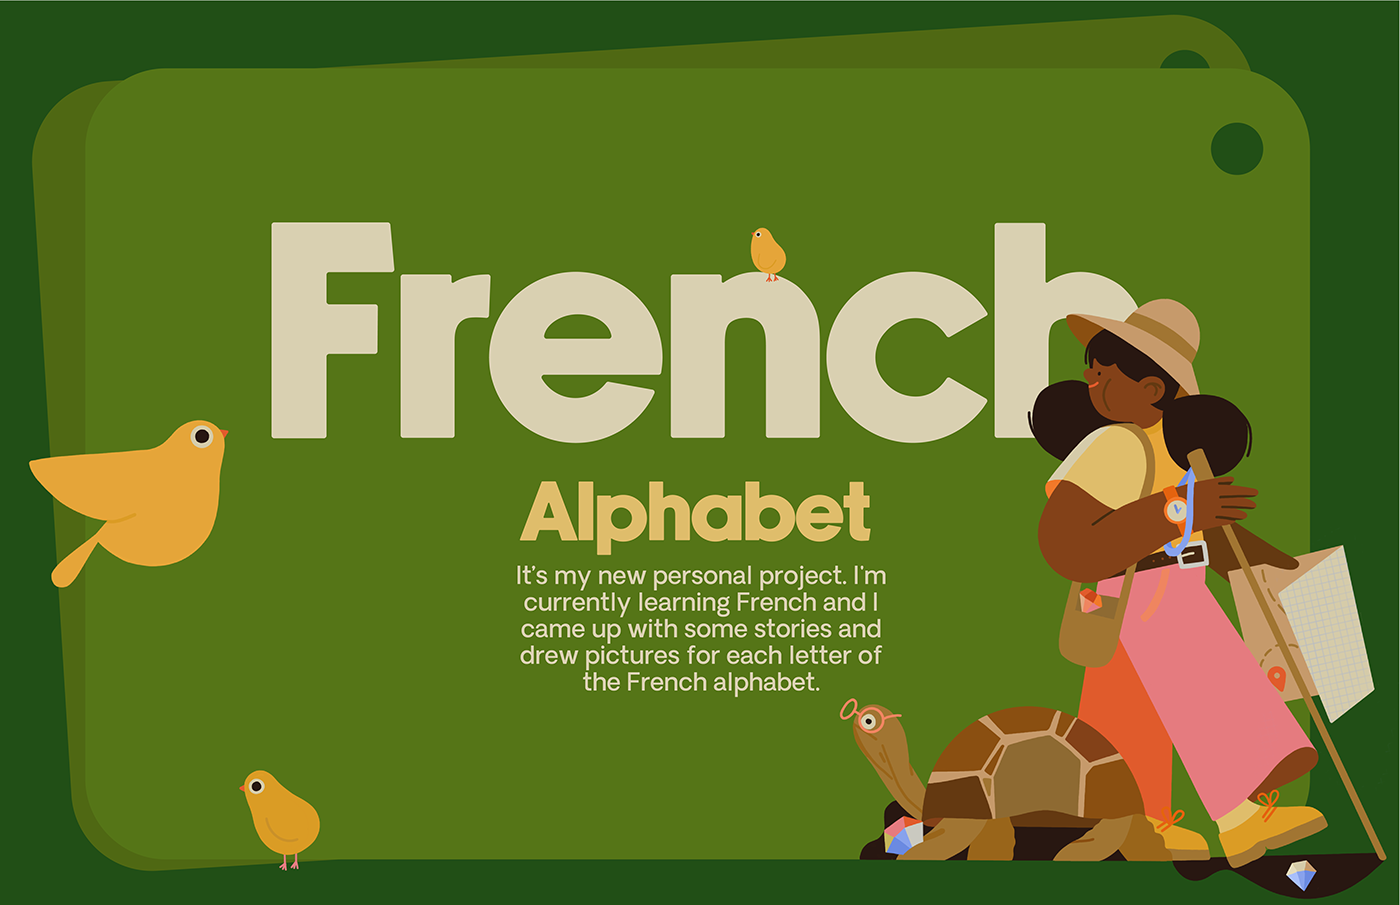 Procreate animals children children illustration alphabet kids cute design French ABC